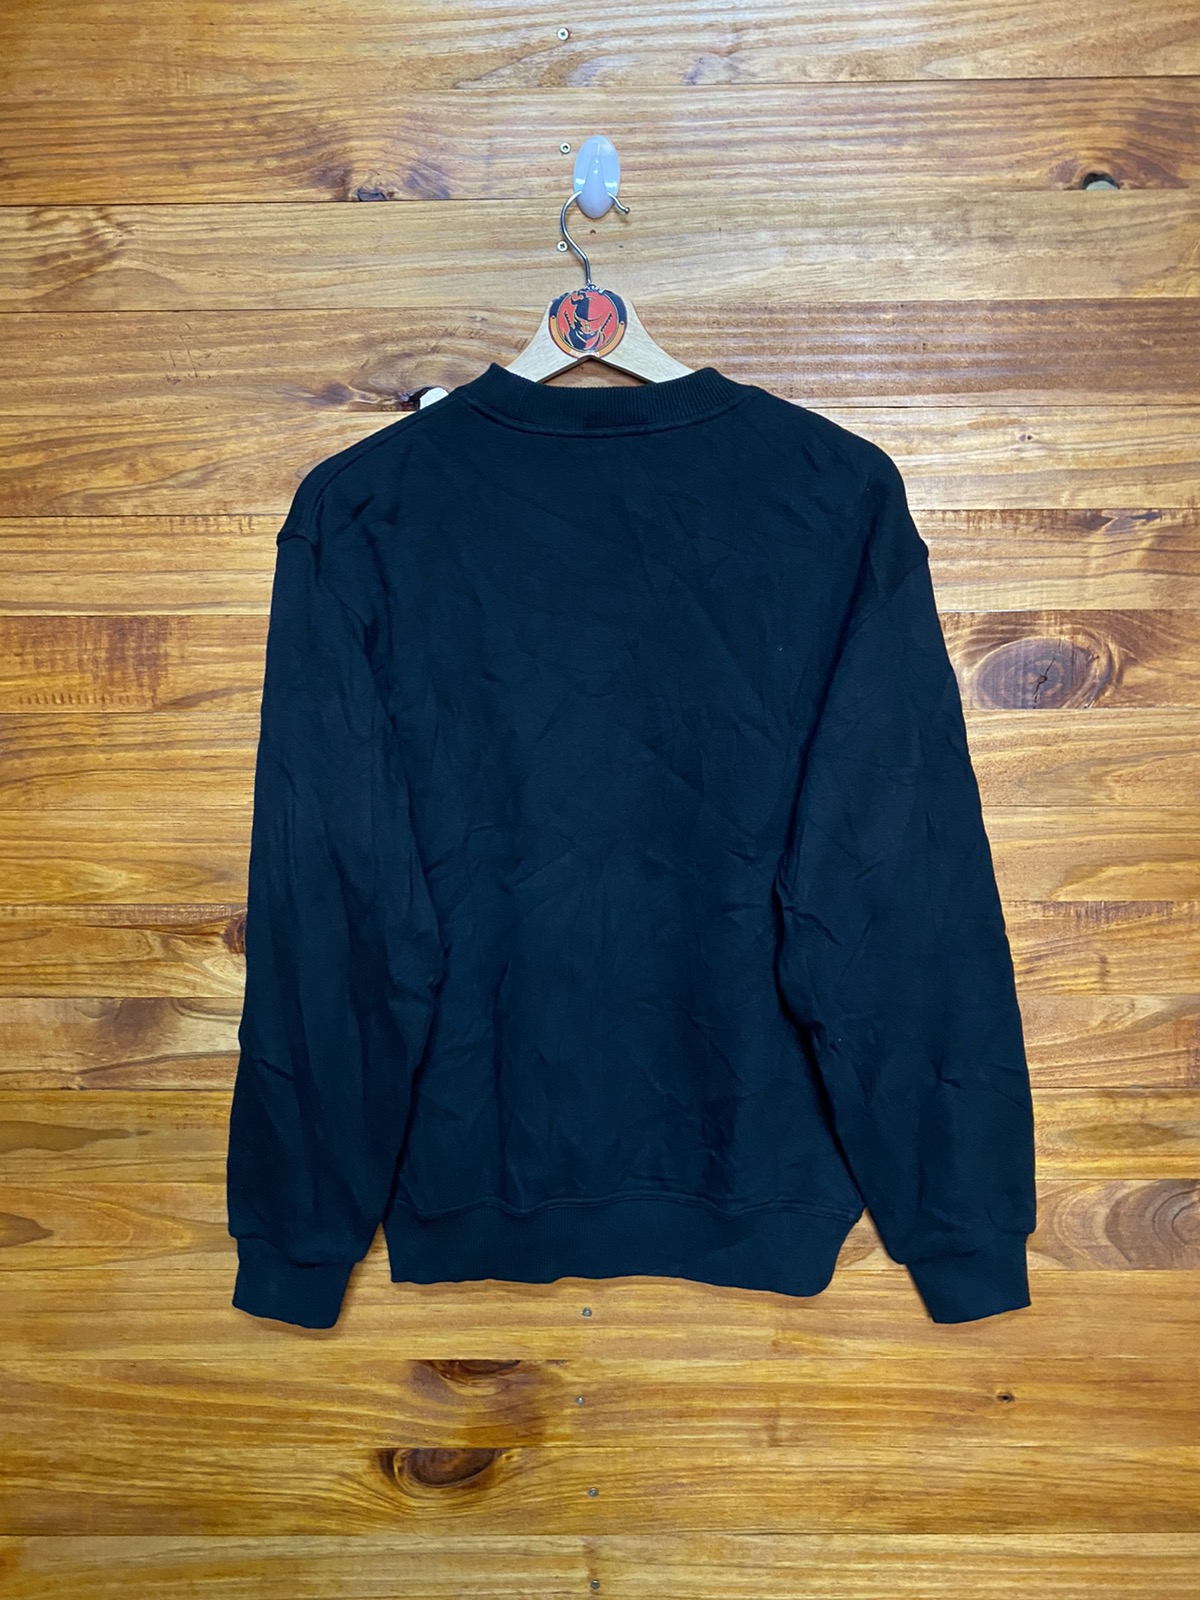 Vintage Embroidered MCM sweatshirt - 5